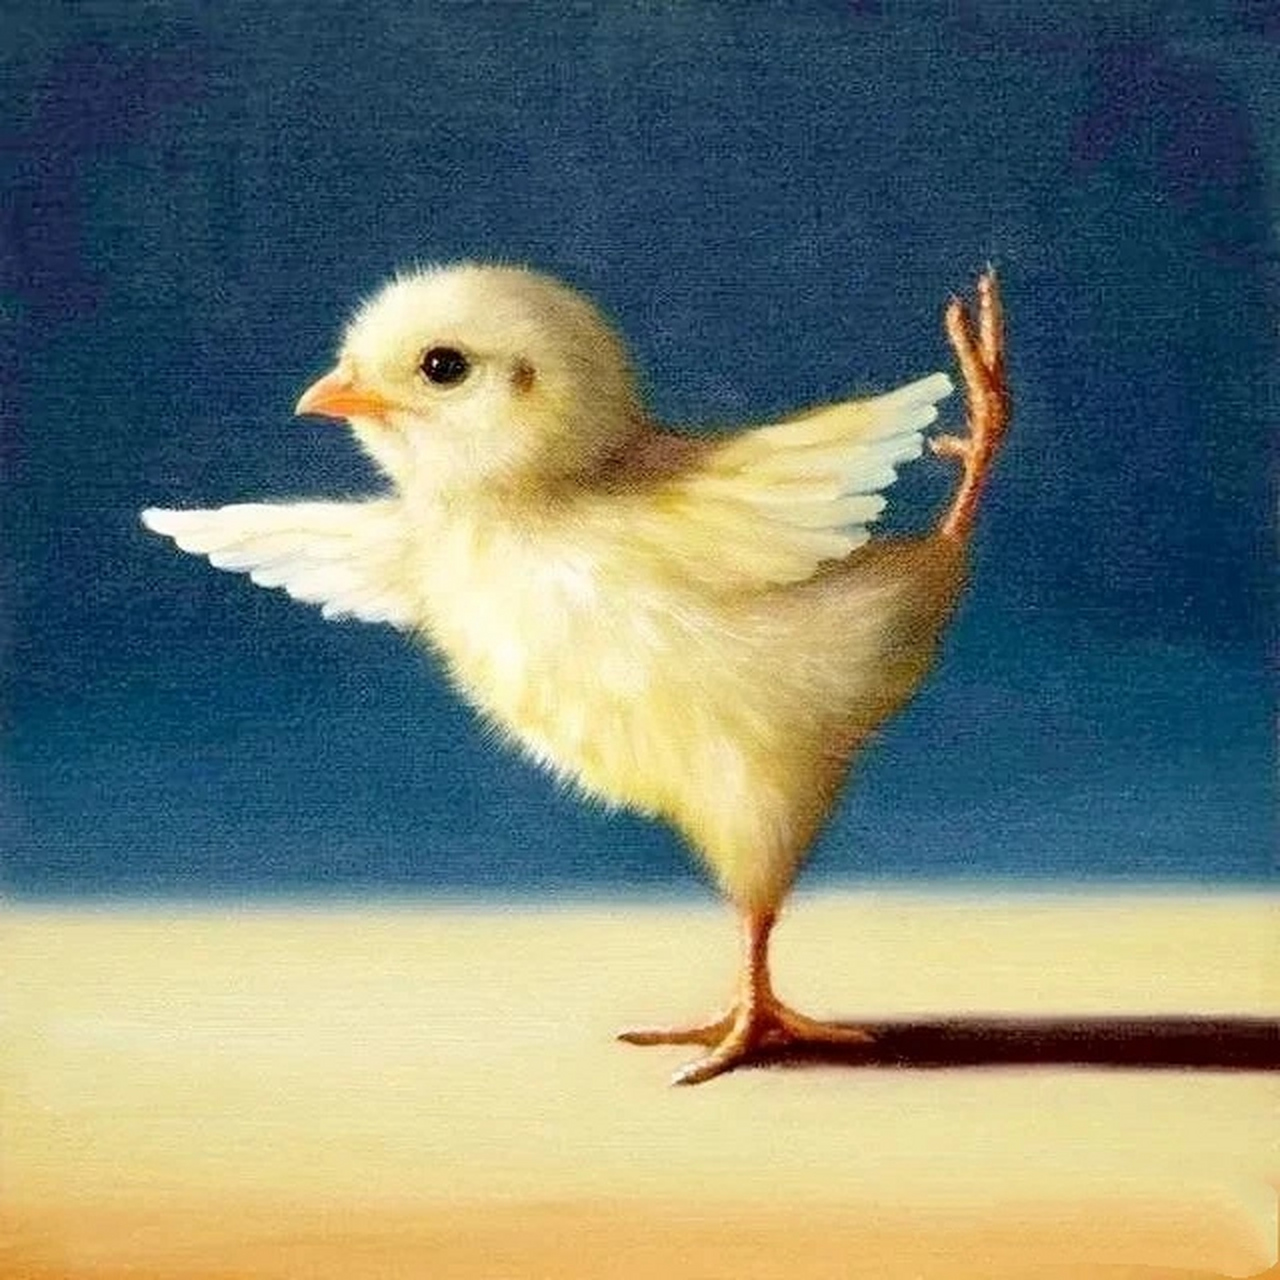 画家lucia heffernan画的一组瑜伽小鸡,高难度的动作,逼真的表情,简直